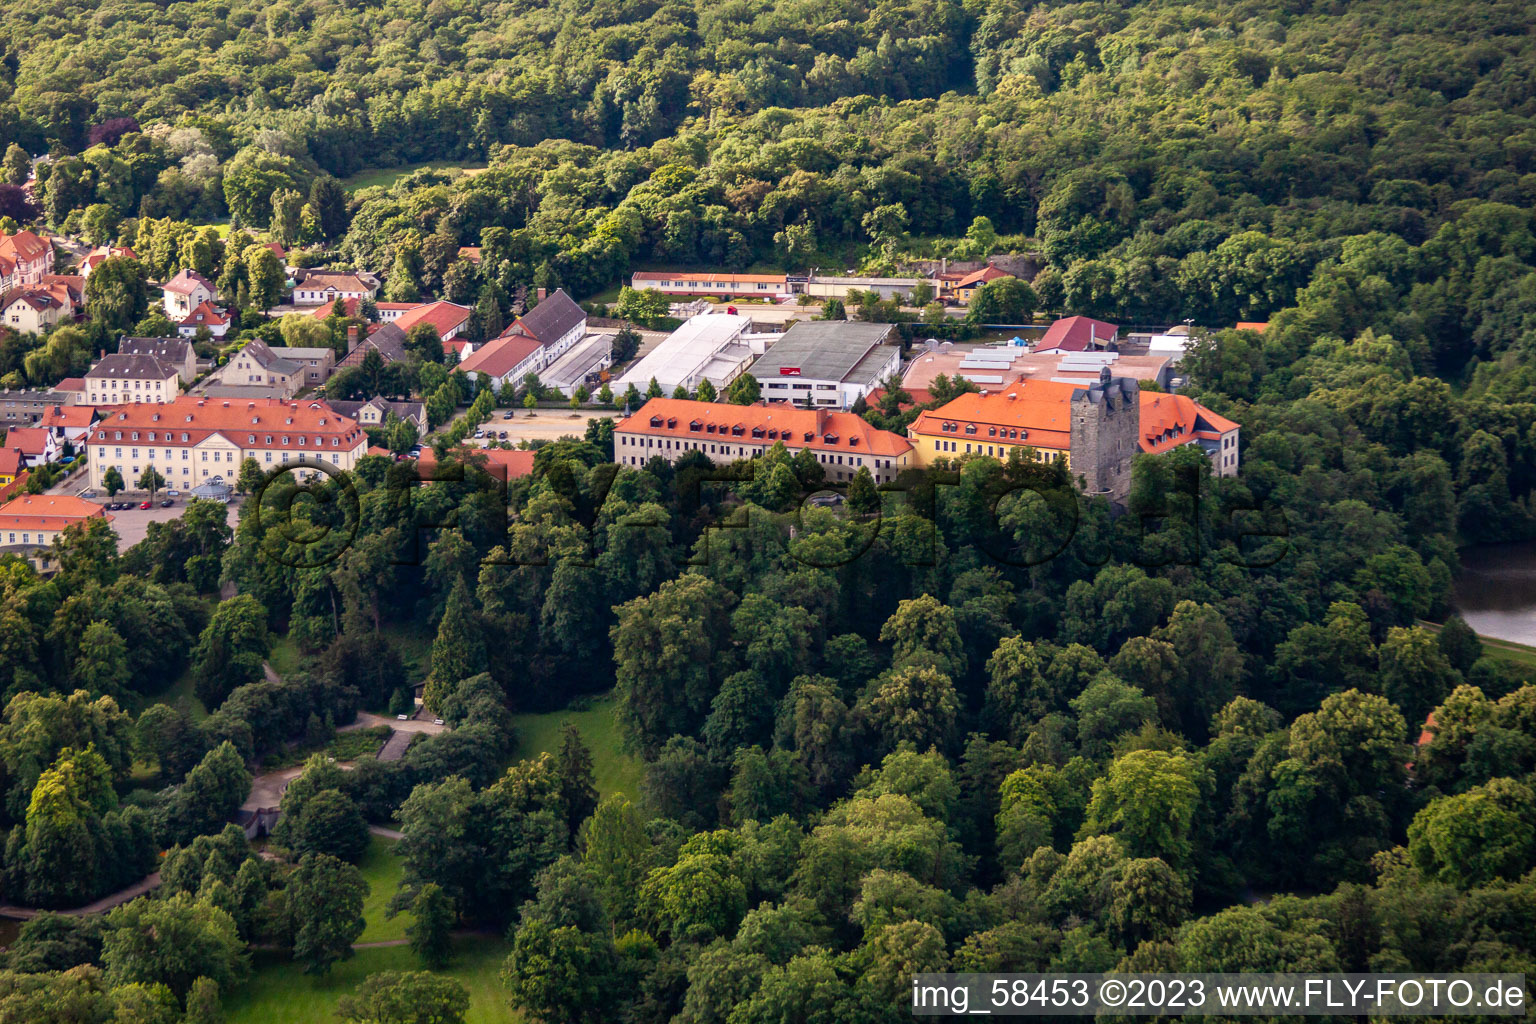 Vue aérienne de Château et parc du château avec étang du château Ballenstedt depuis le nord à Ballenstedt dans le département Saxe-Anhalt, Allemagne